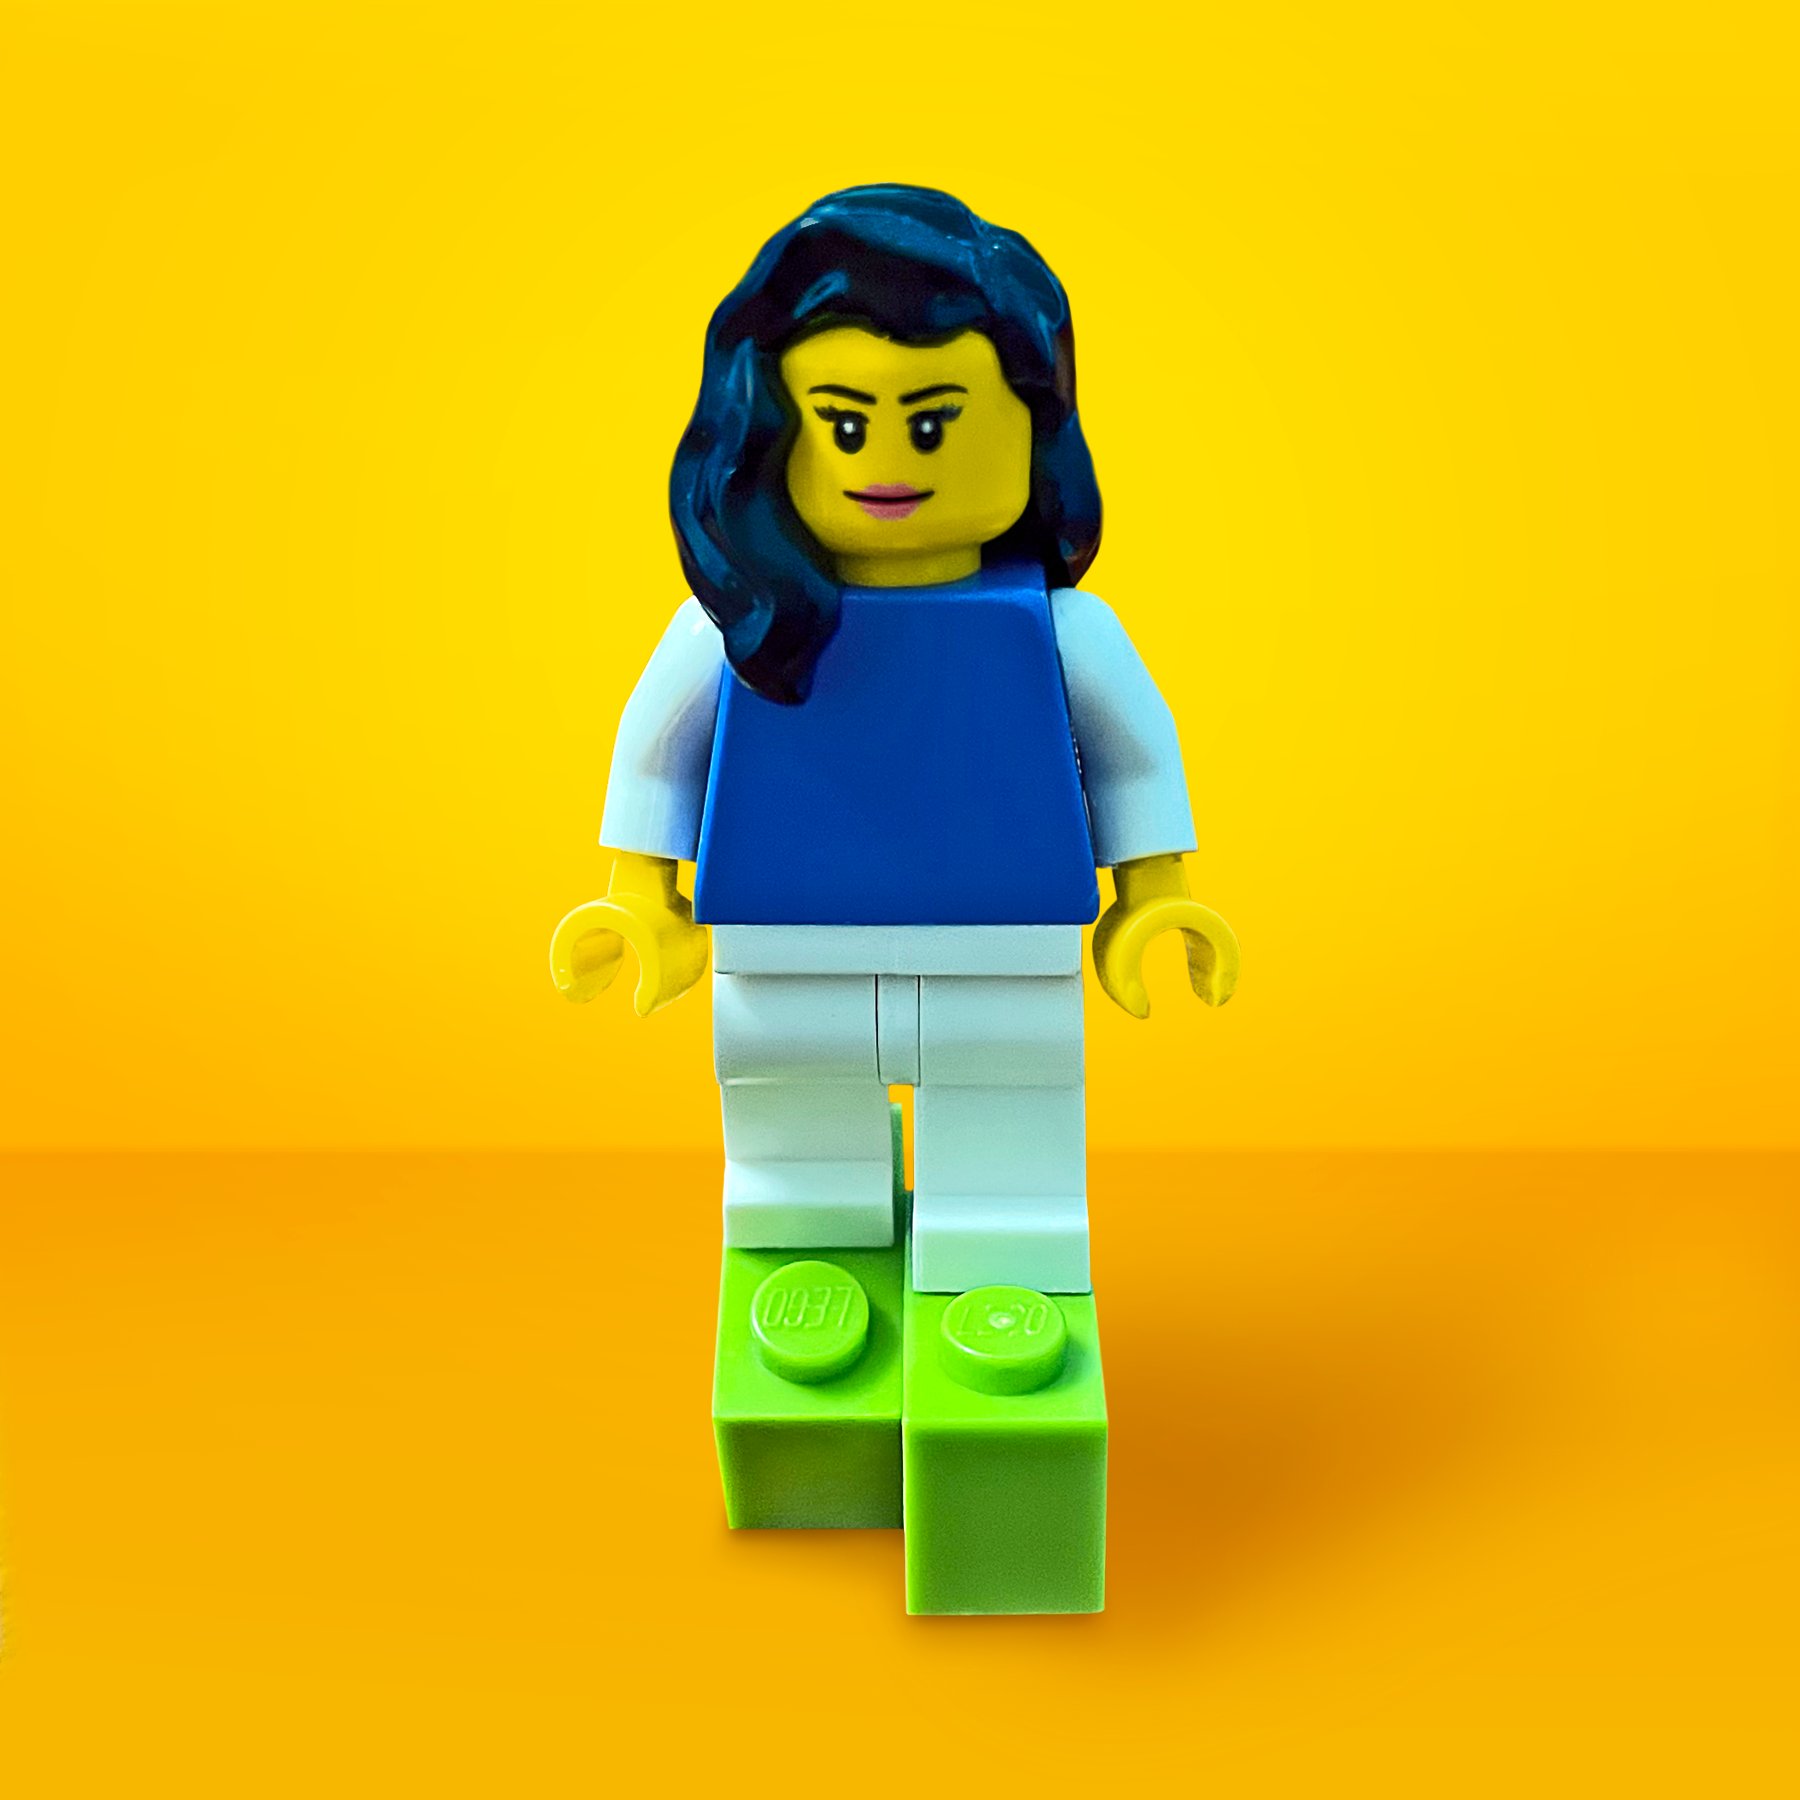 LEGO on Twitter: we doing this sandal right? https://t.co/RvKbDPjtZL" / Twitter